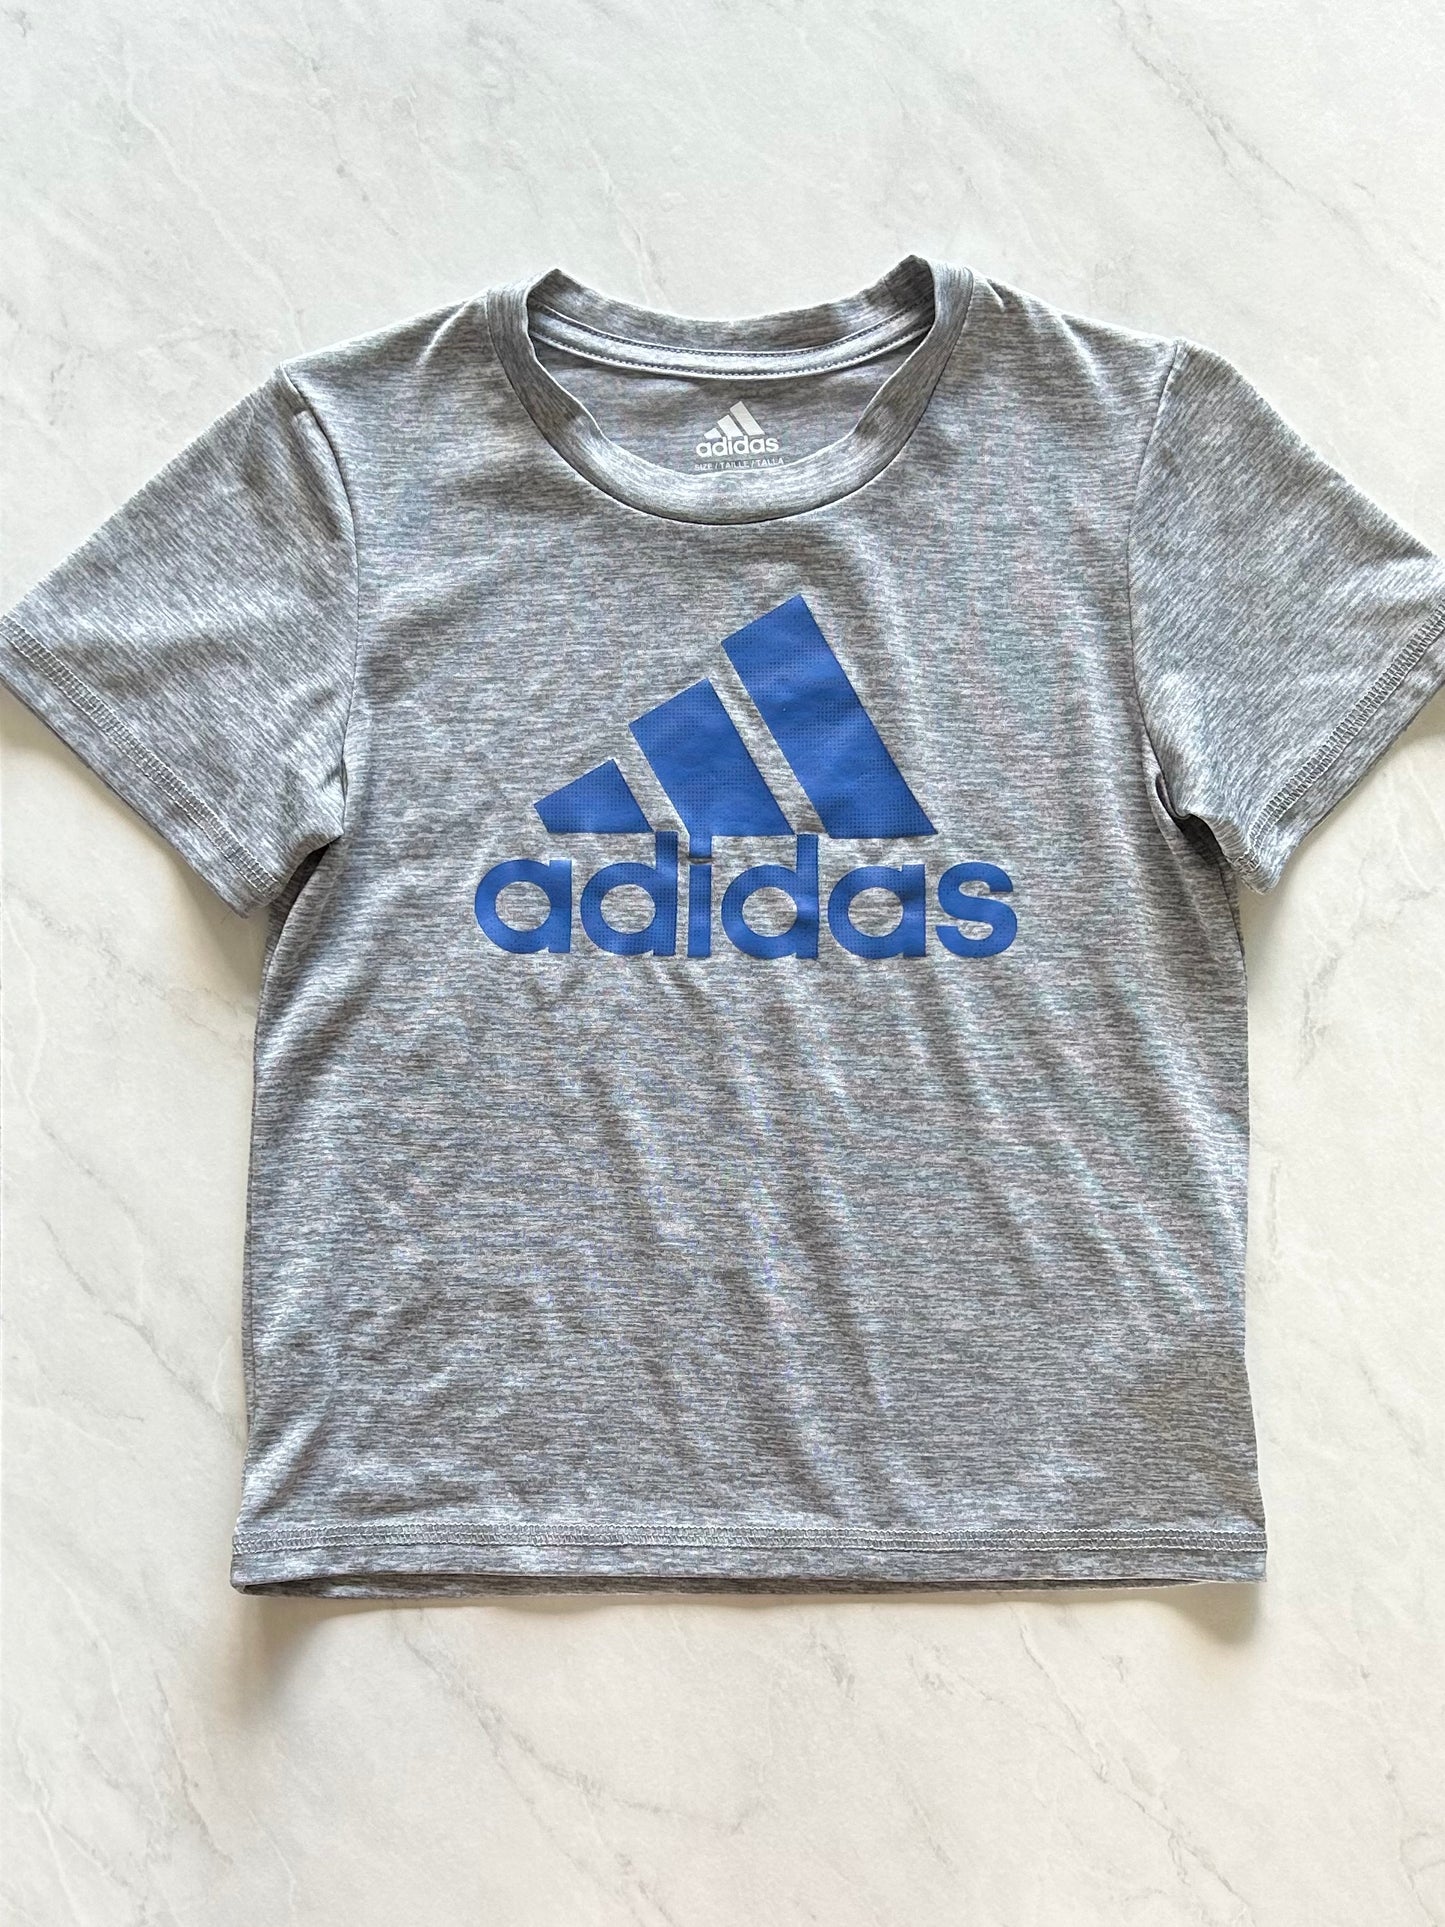 T-shirt - Adidas - 5 ans